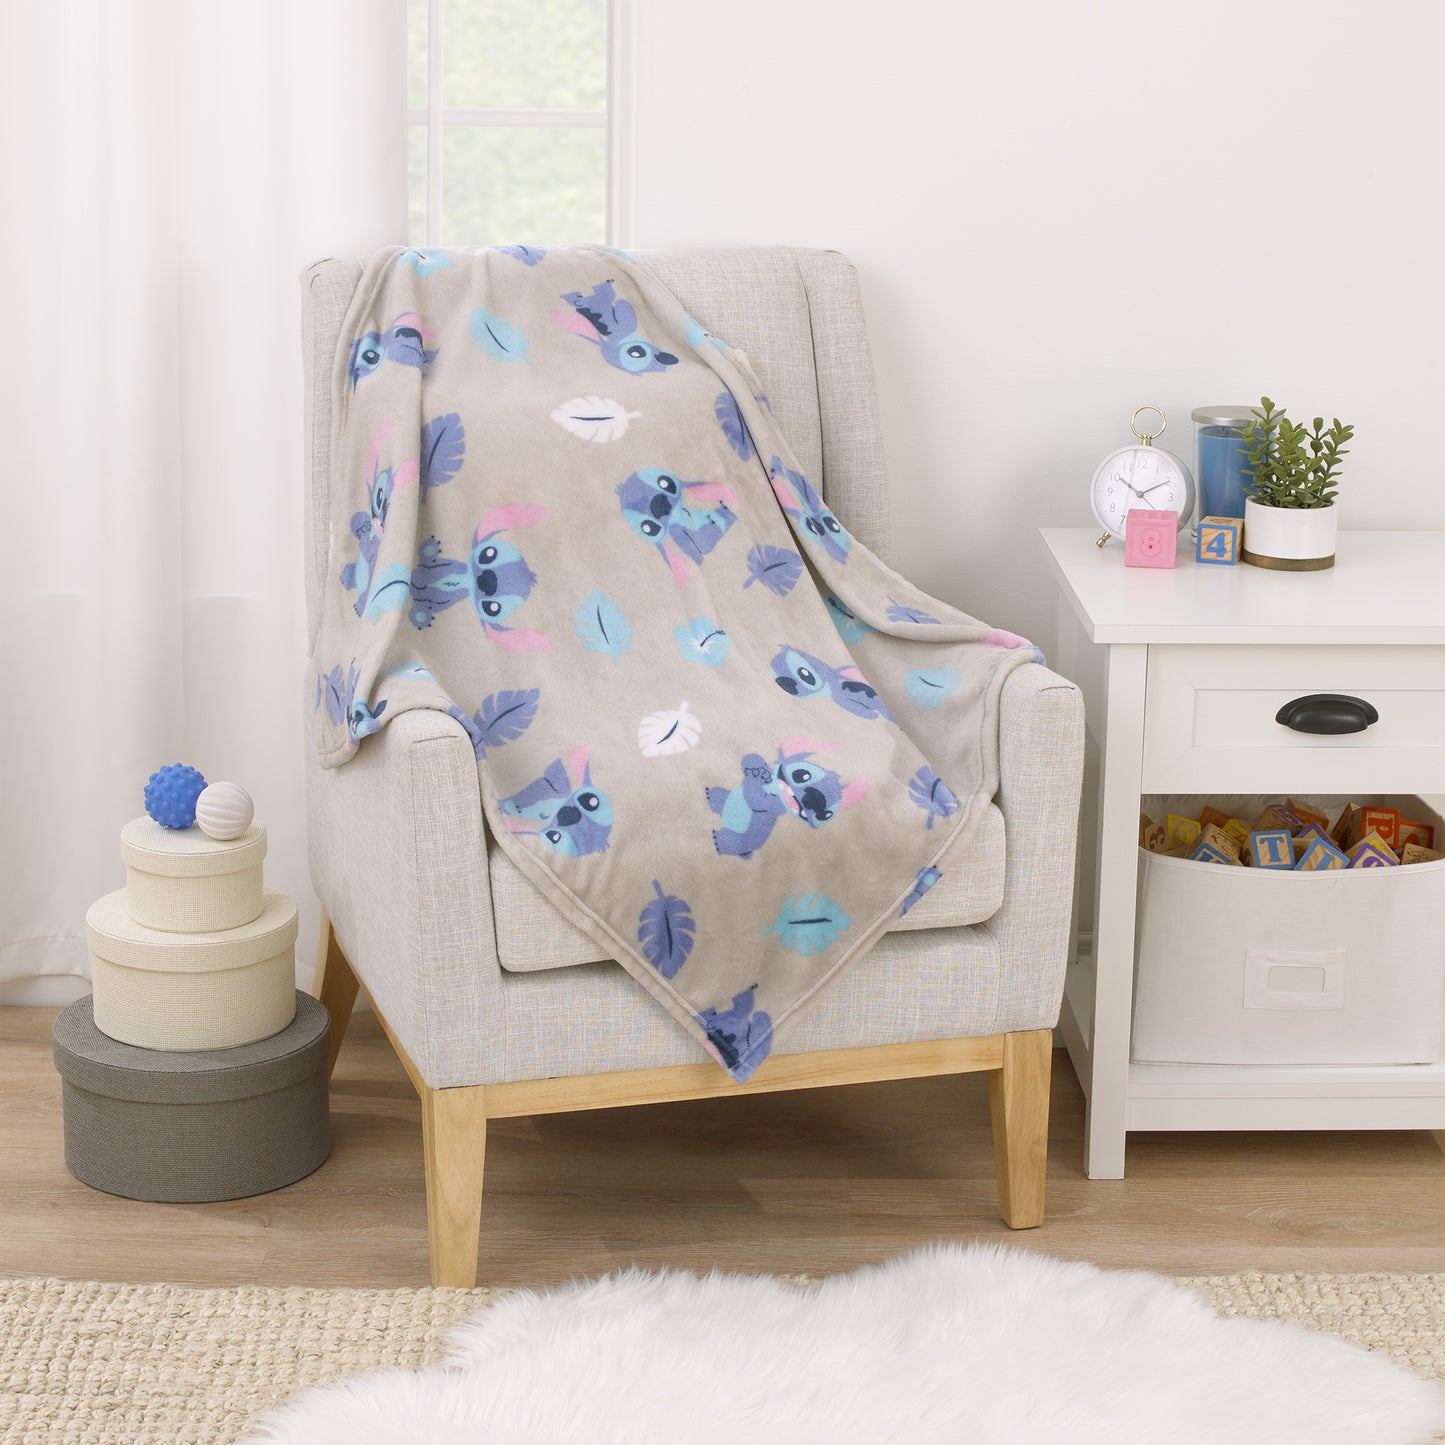 Disney Stitch Gray, Blue, Aqua, and White Super Soft Plush Baby Blanket